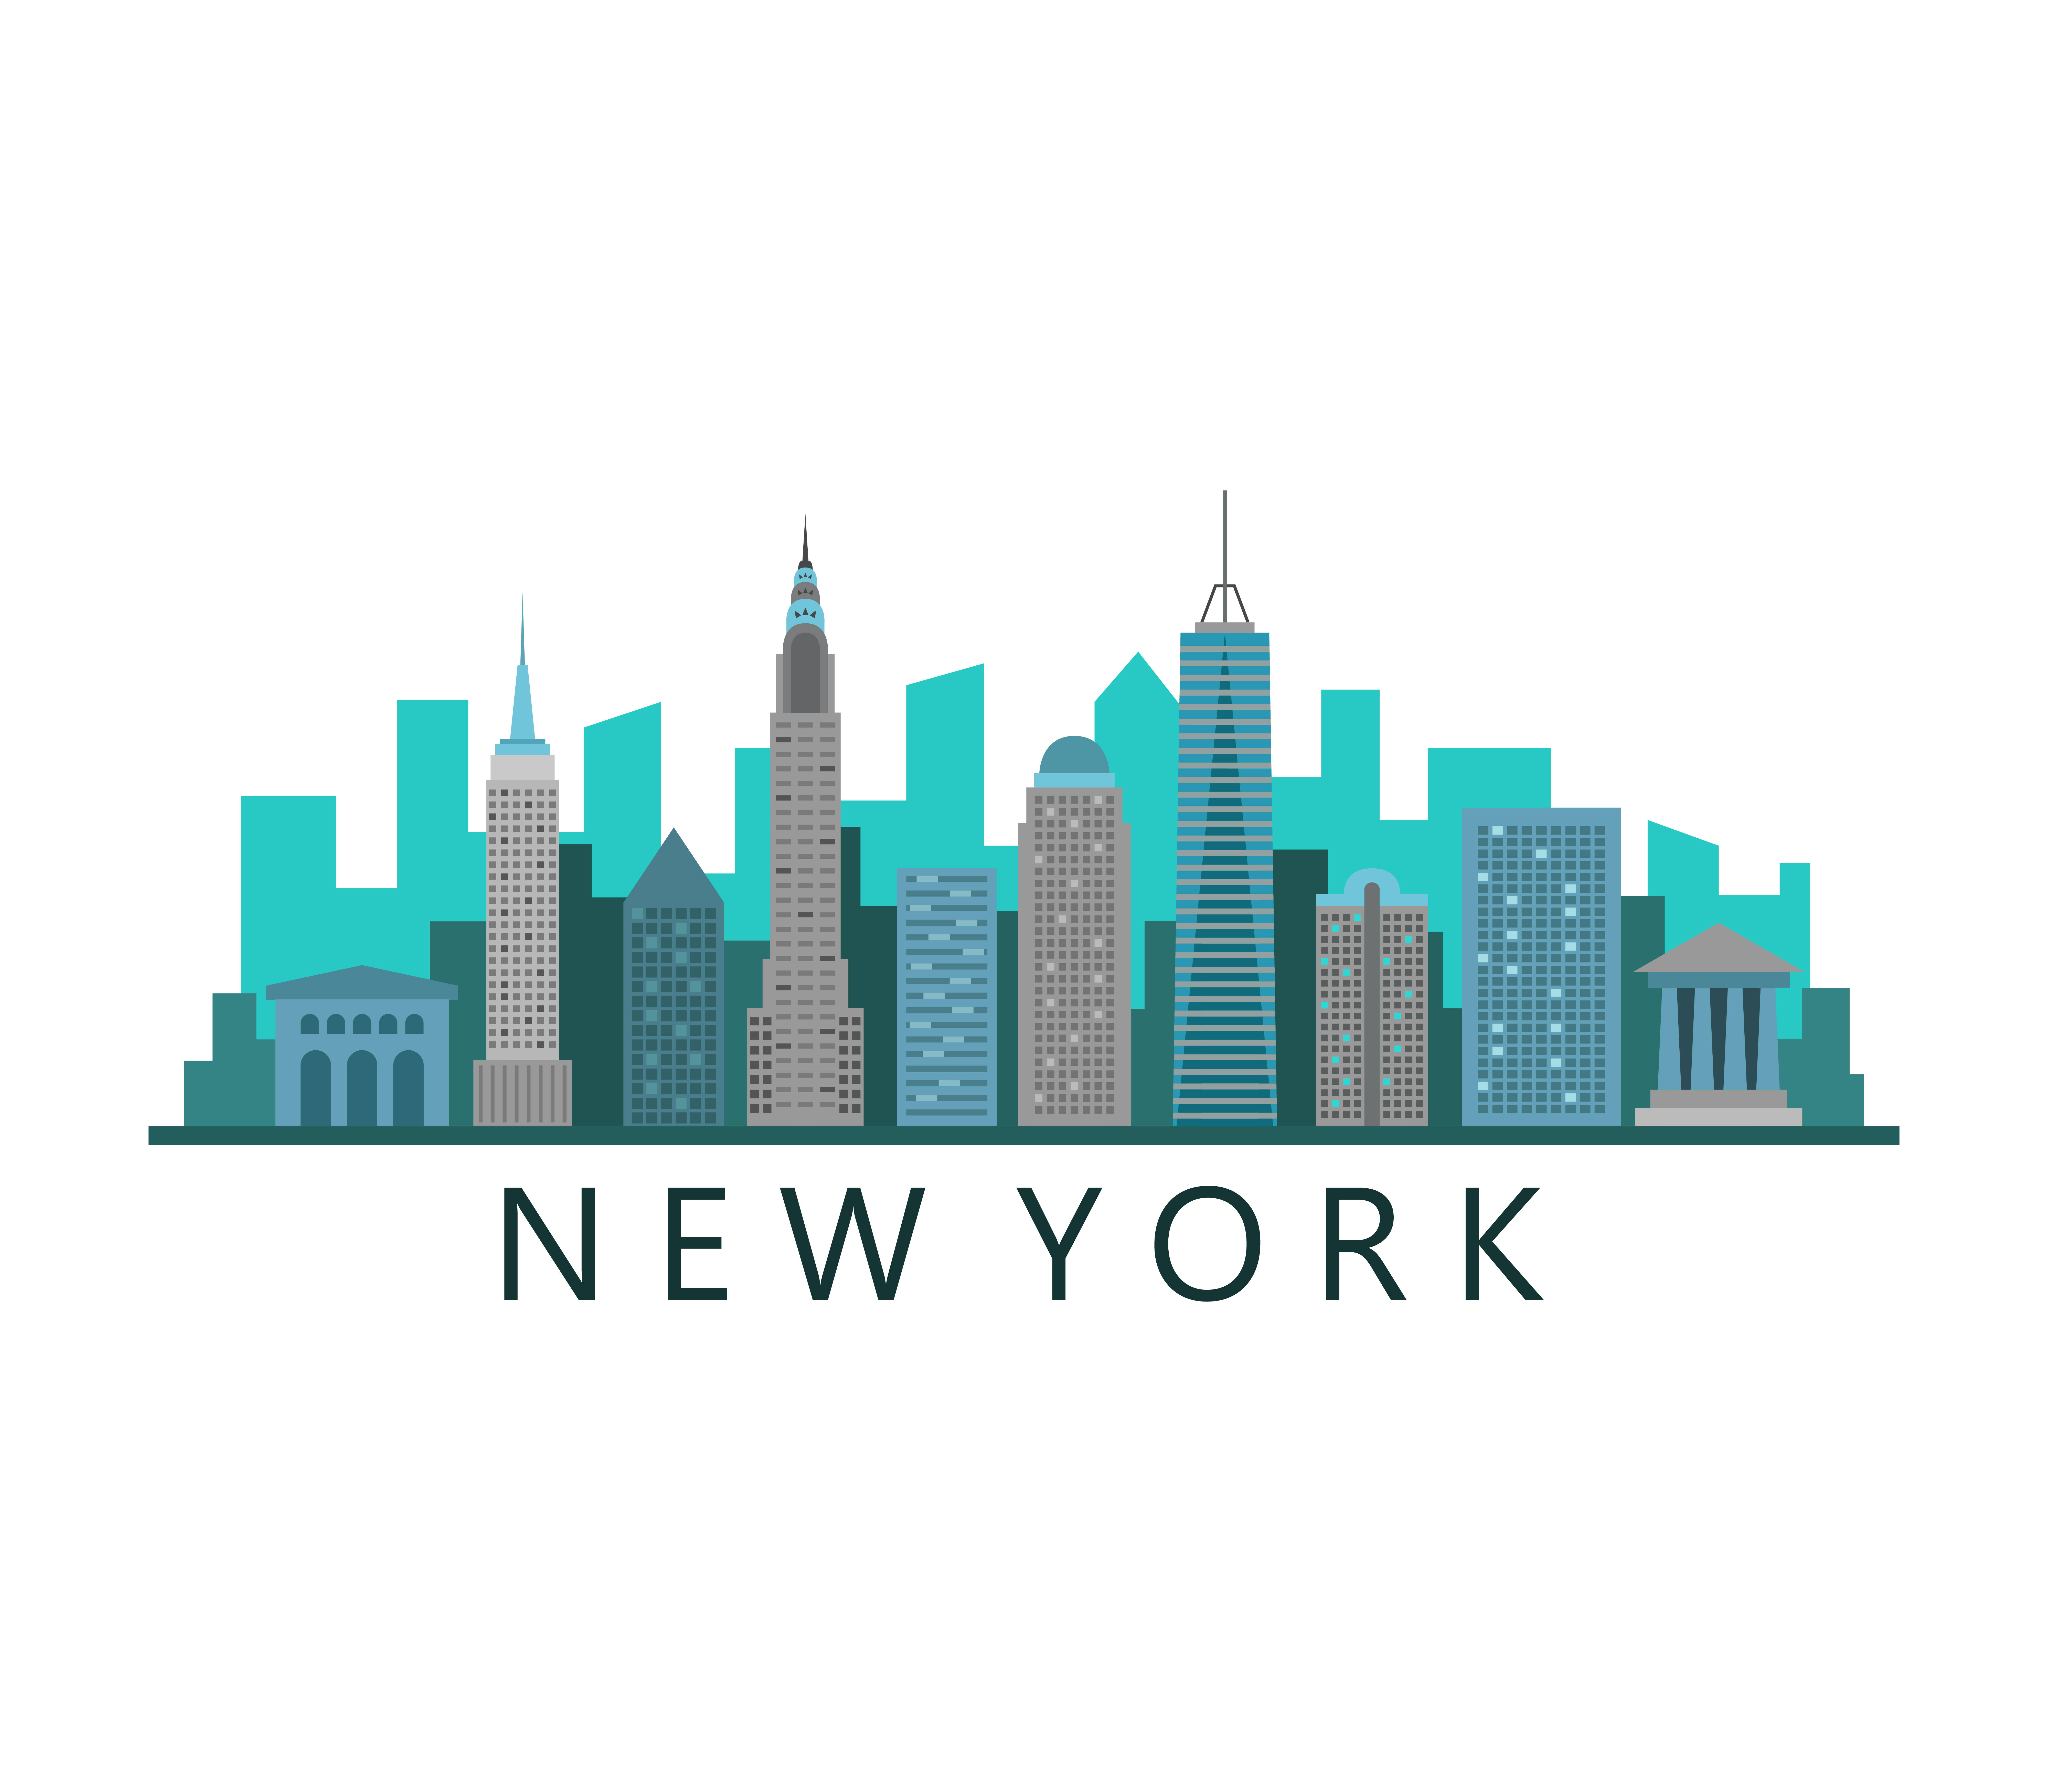 Orizzonte Di New York Su Una Priorita Bassa Bianca Scarica Immagini Vettoriali Gratis Grafica Vettoriale E Disegno Modelli